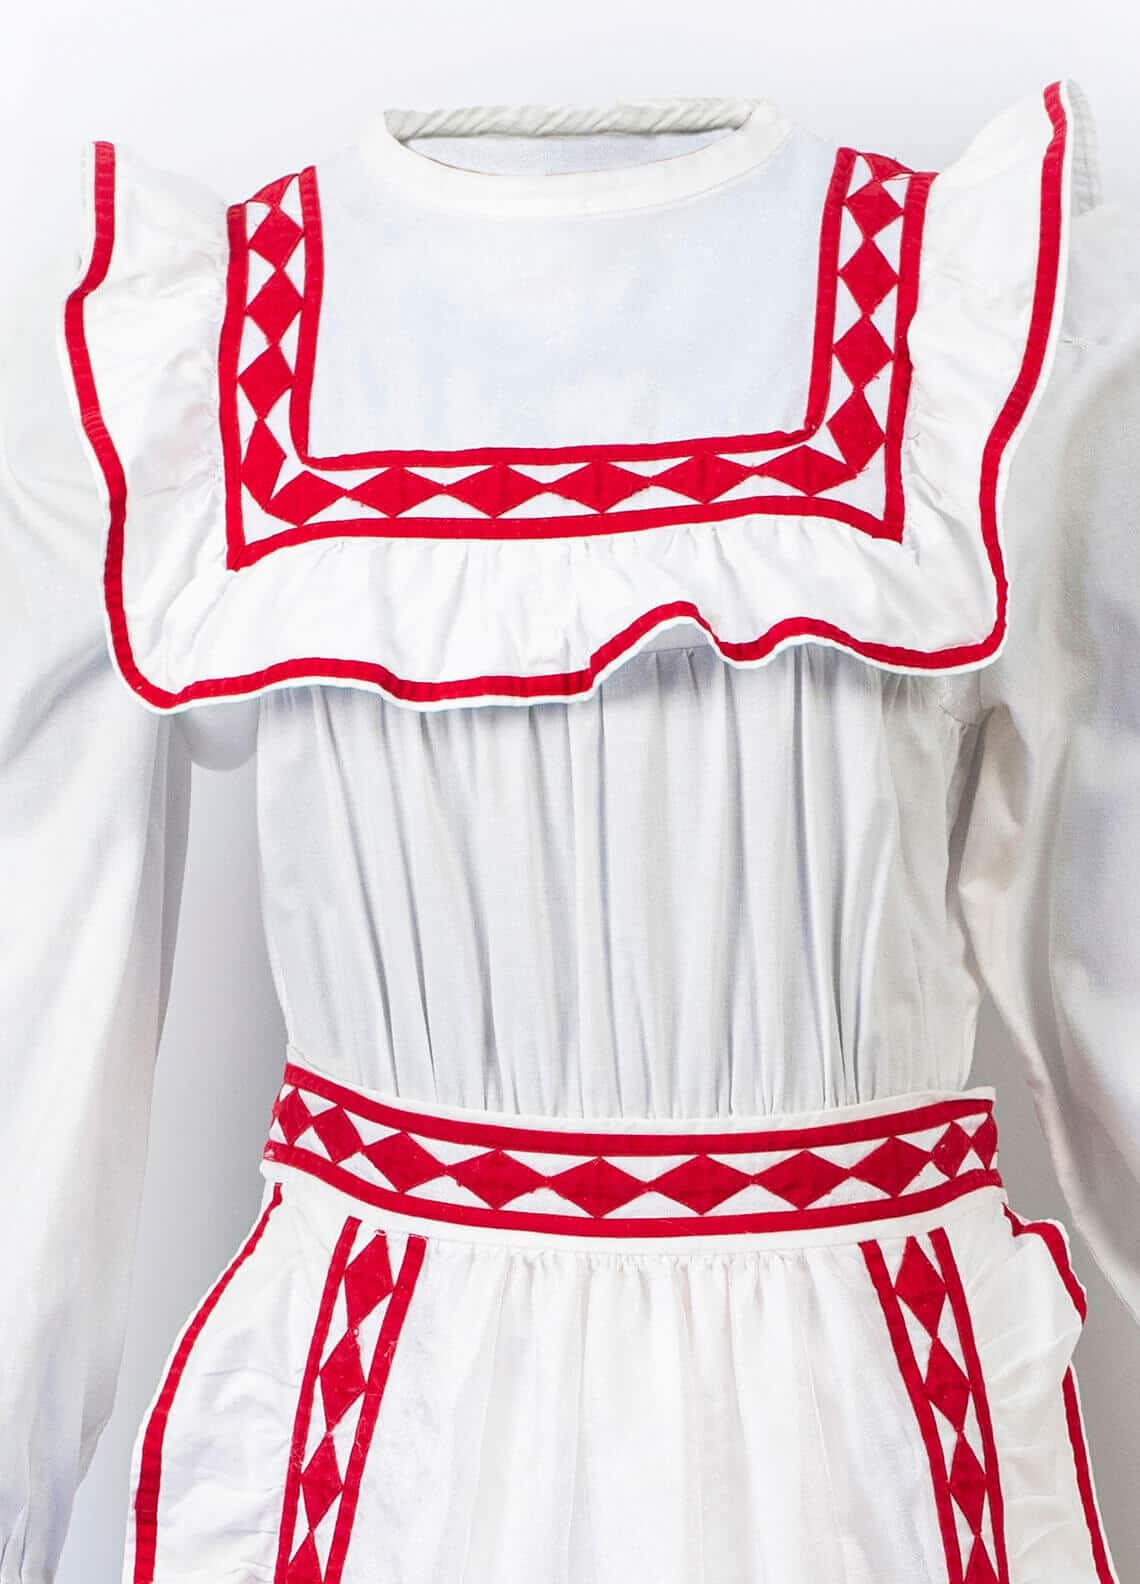 Choctaw Traditional Ribbon Dress with Diamond Pattern